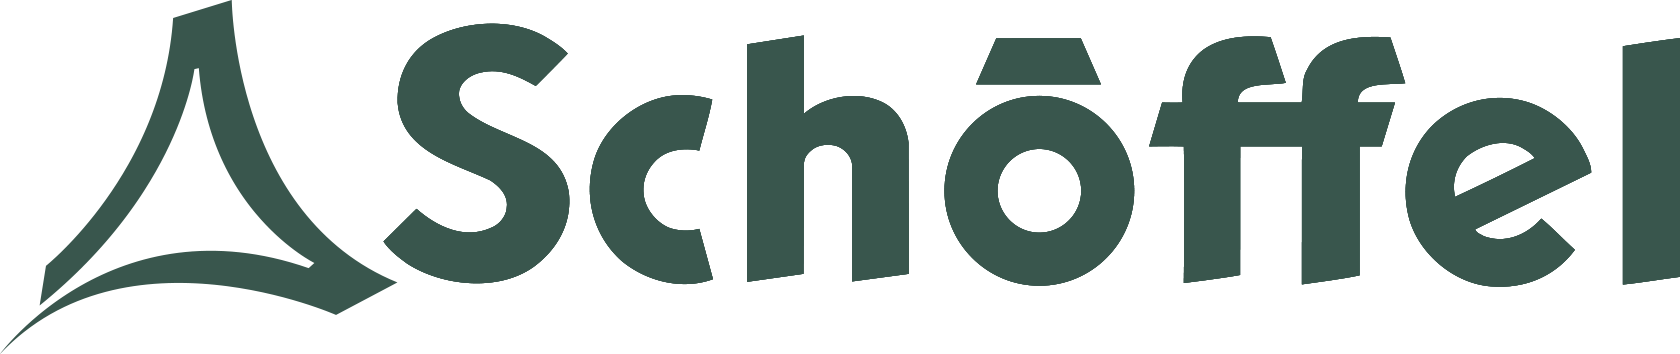 Schoffel Logo